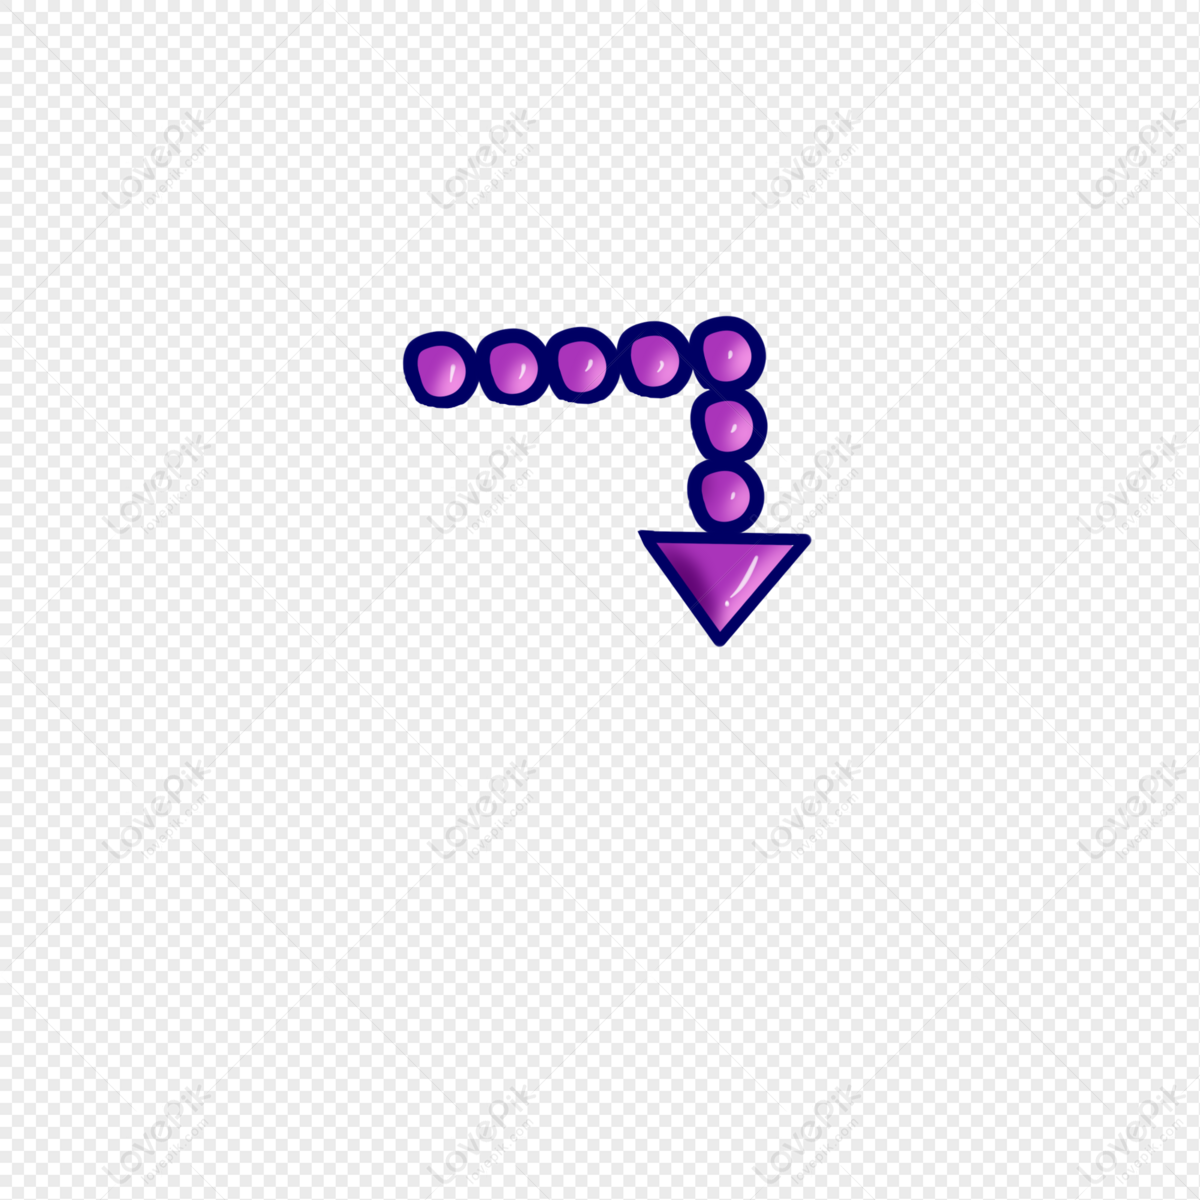 Arrow Purple Down Transparent PNG Clip Art Image​